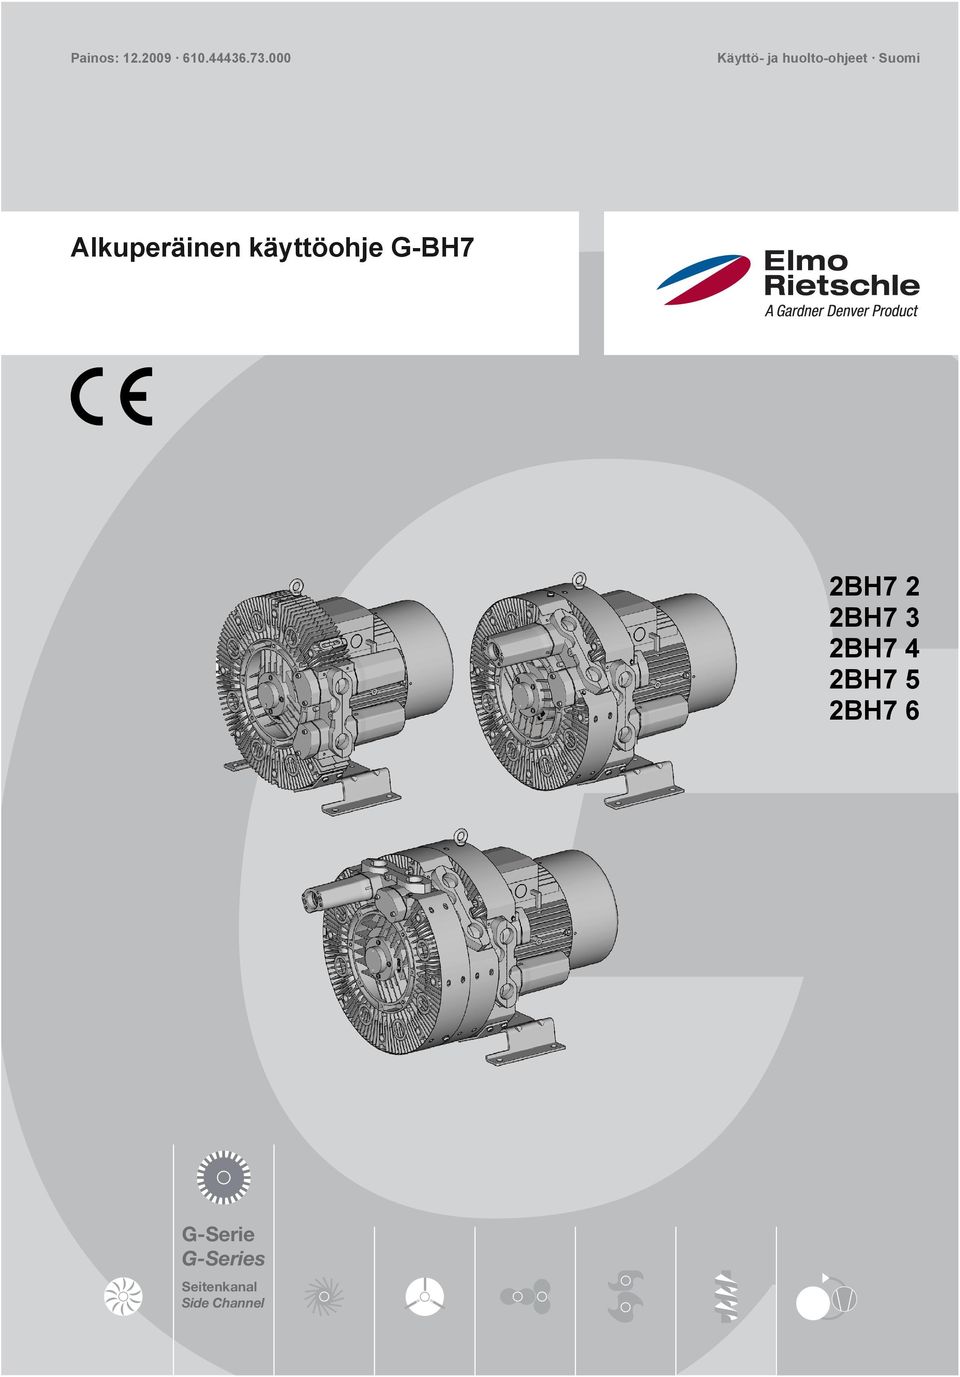 Alkuperäinen käyttöohje G-BH7 2BH7 2 2BH7